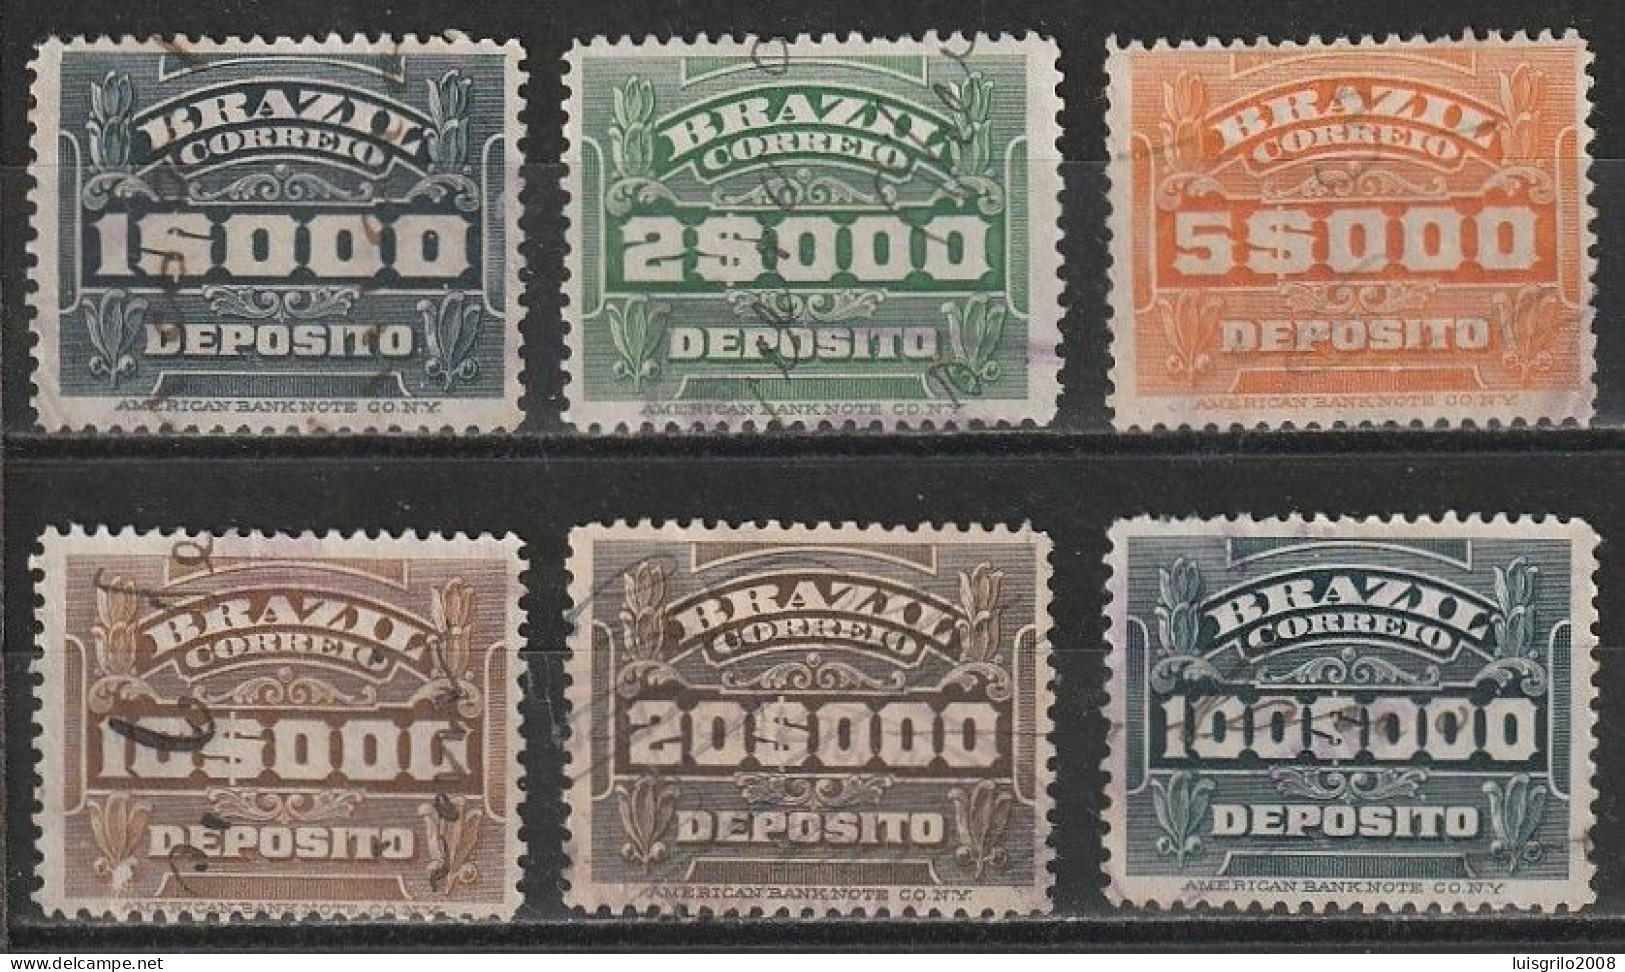 Revenue/ Fiscaux, Brazil 1920 - Depósito, Receita Fiscal -|- 1$000, 2$000, 5$000, 10$000, 20$000, 100$000 - Impuestos